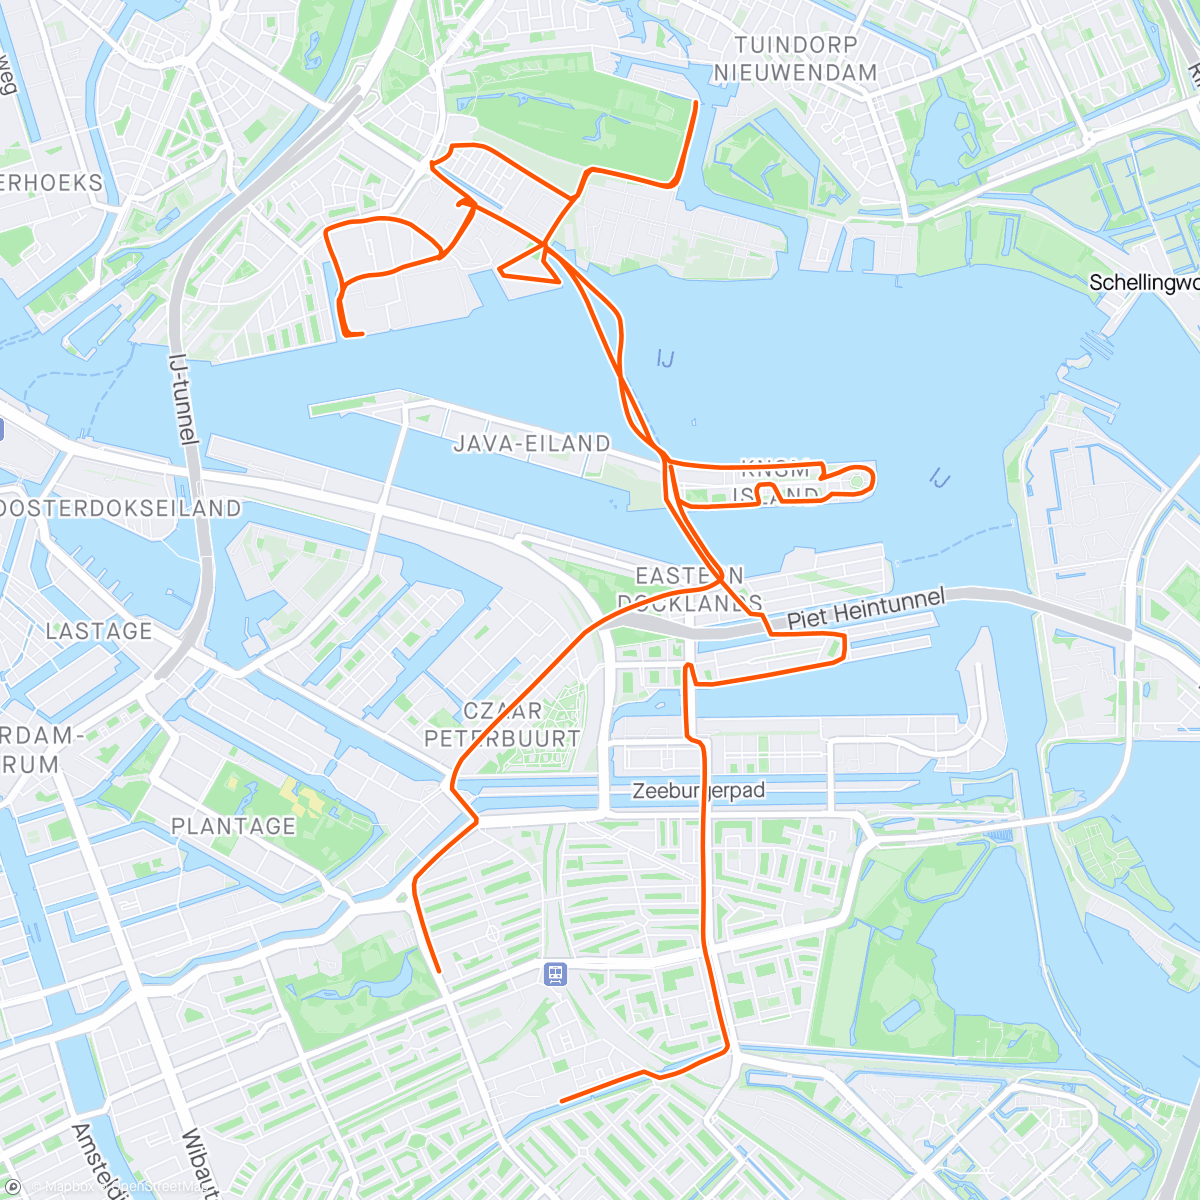 「City Crusing - Amsterdam Nord, voller Überraschungen 🤗」活動的地圖